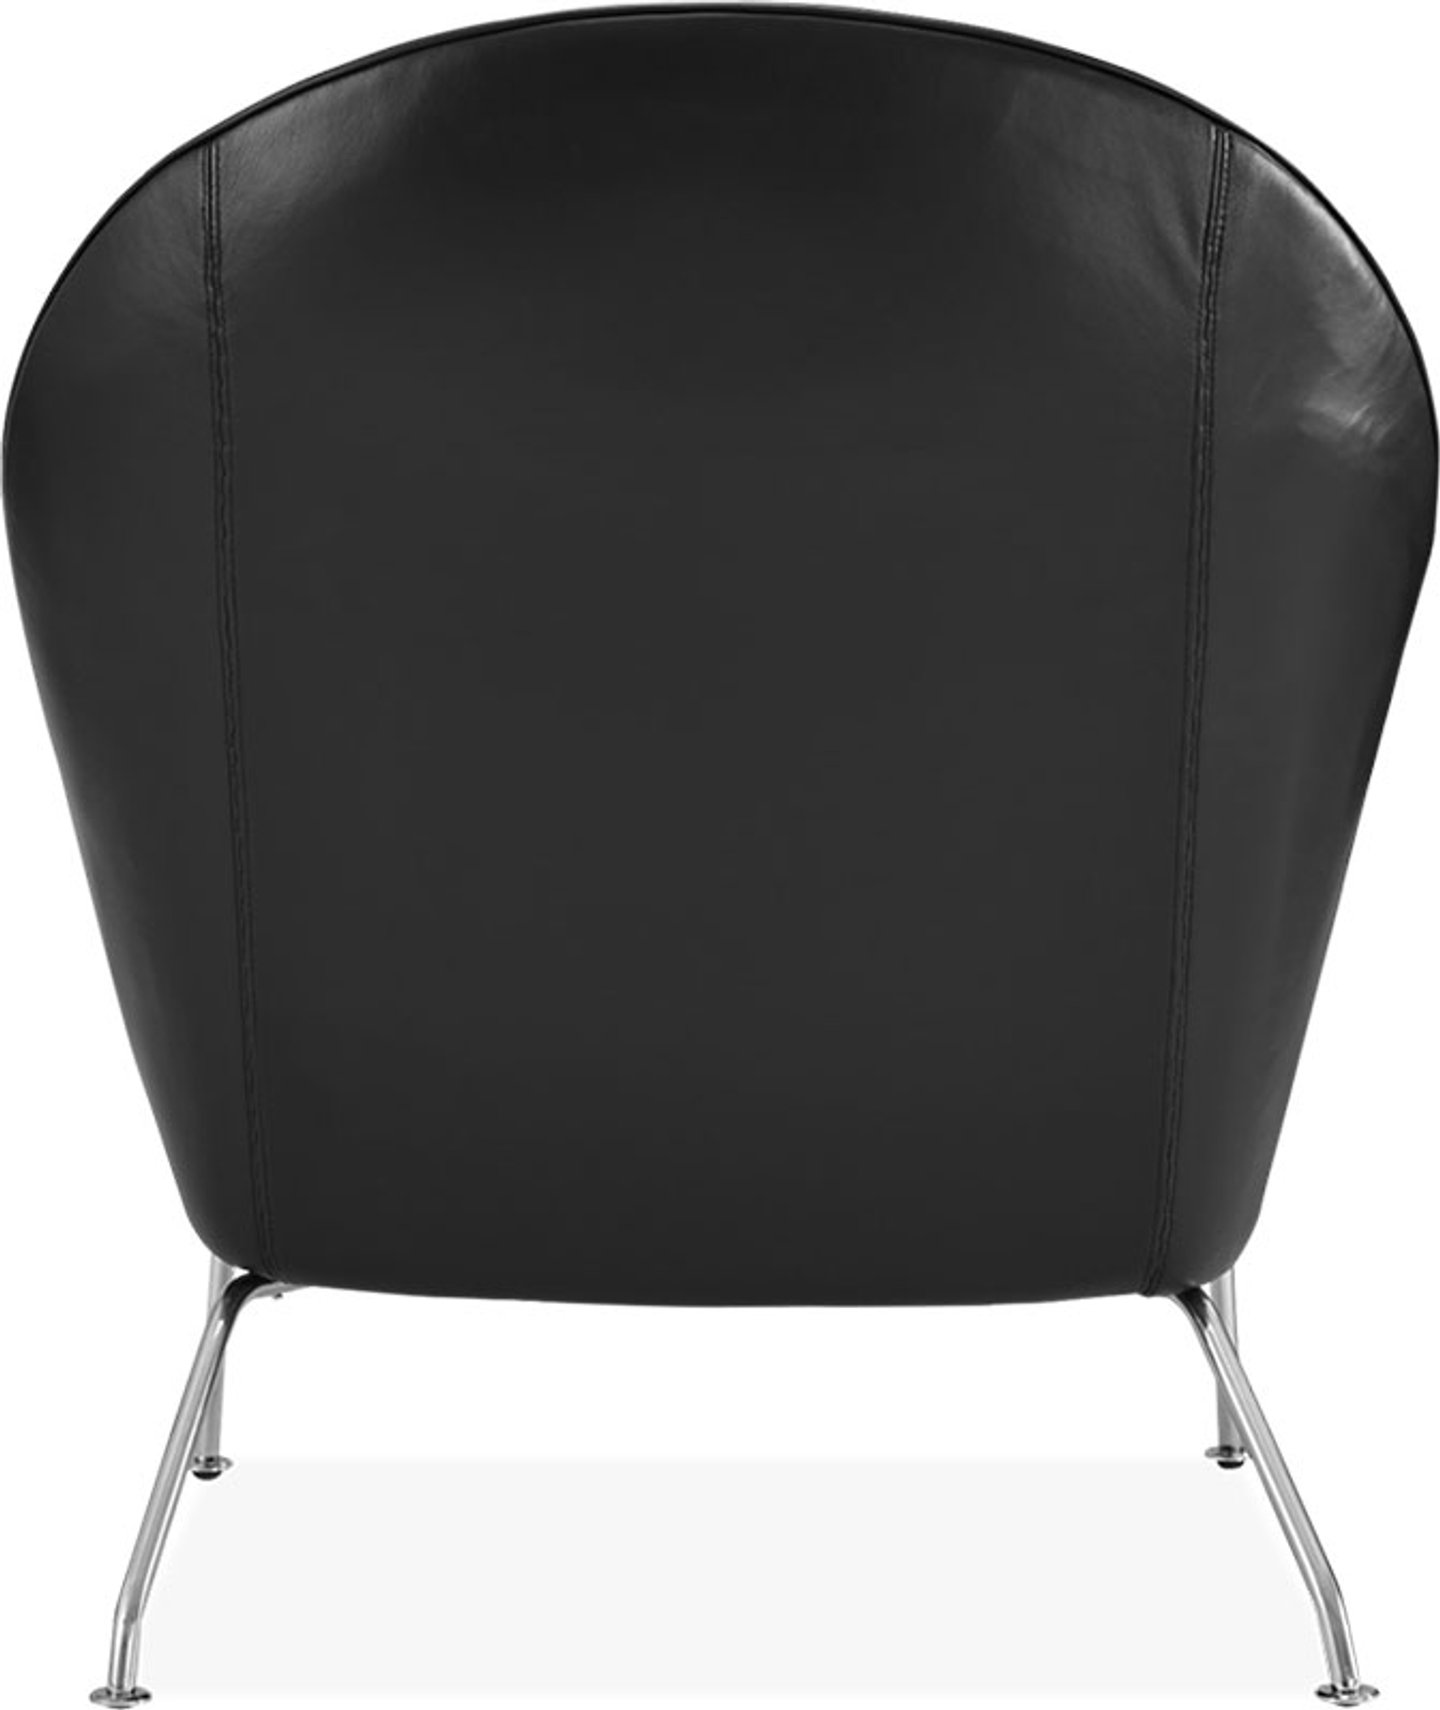 Oculus stol Premium Leather/Black  image.